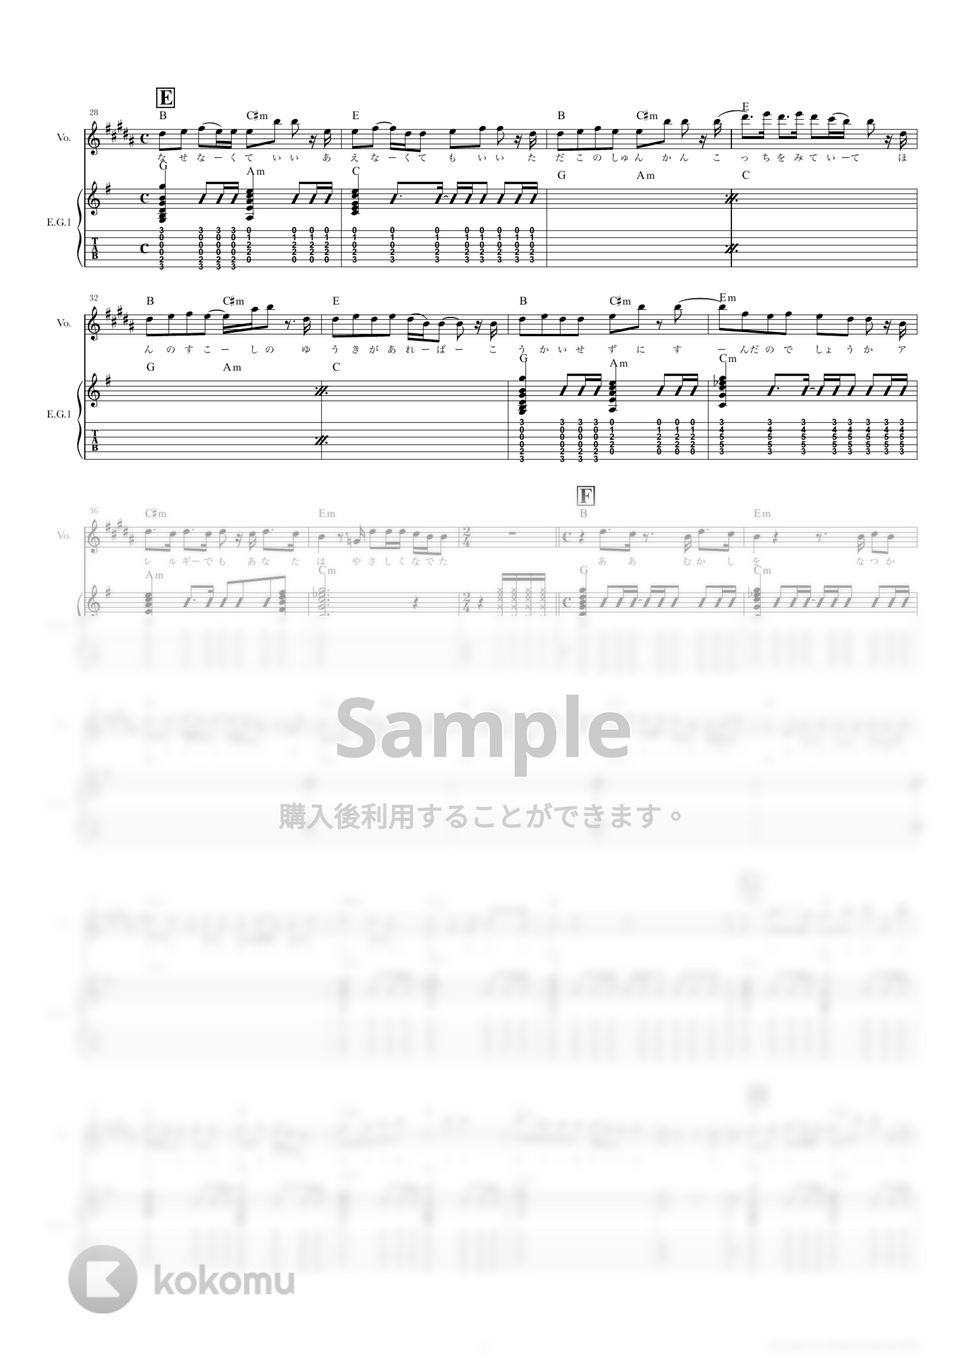 きのこ帝国 - 猫とアレルギー (ギタースコア・歌詞・コード付き) by TRIAD GUITAR SCHOOL